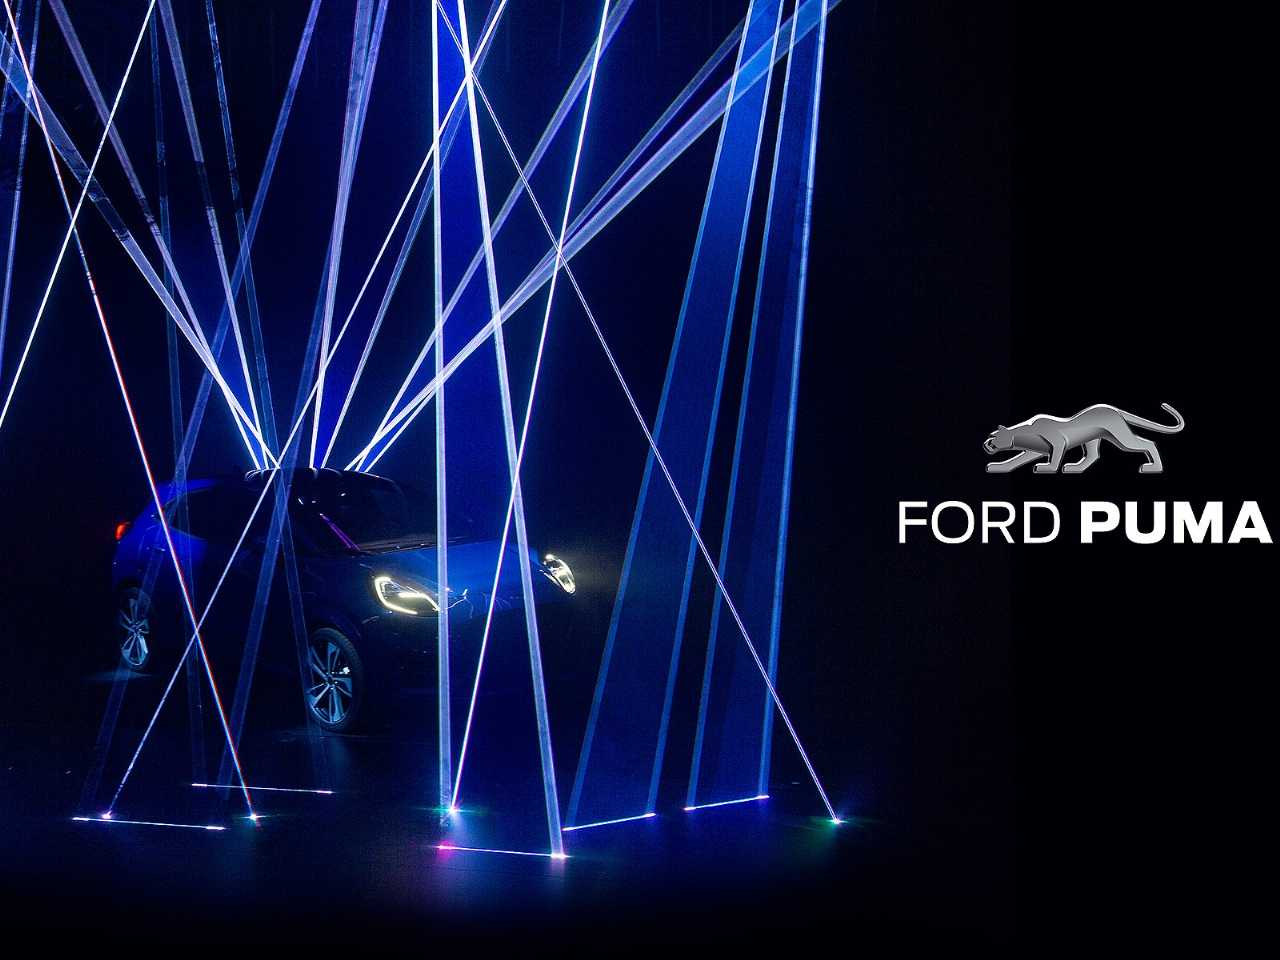 Primeiro teaser do novo Ford Puma revelado na Europa